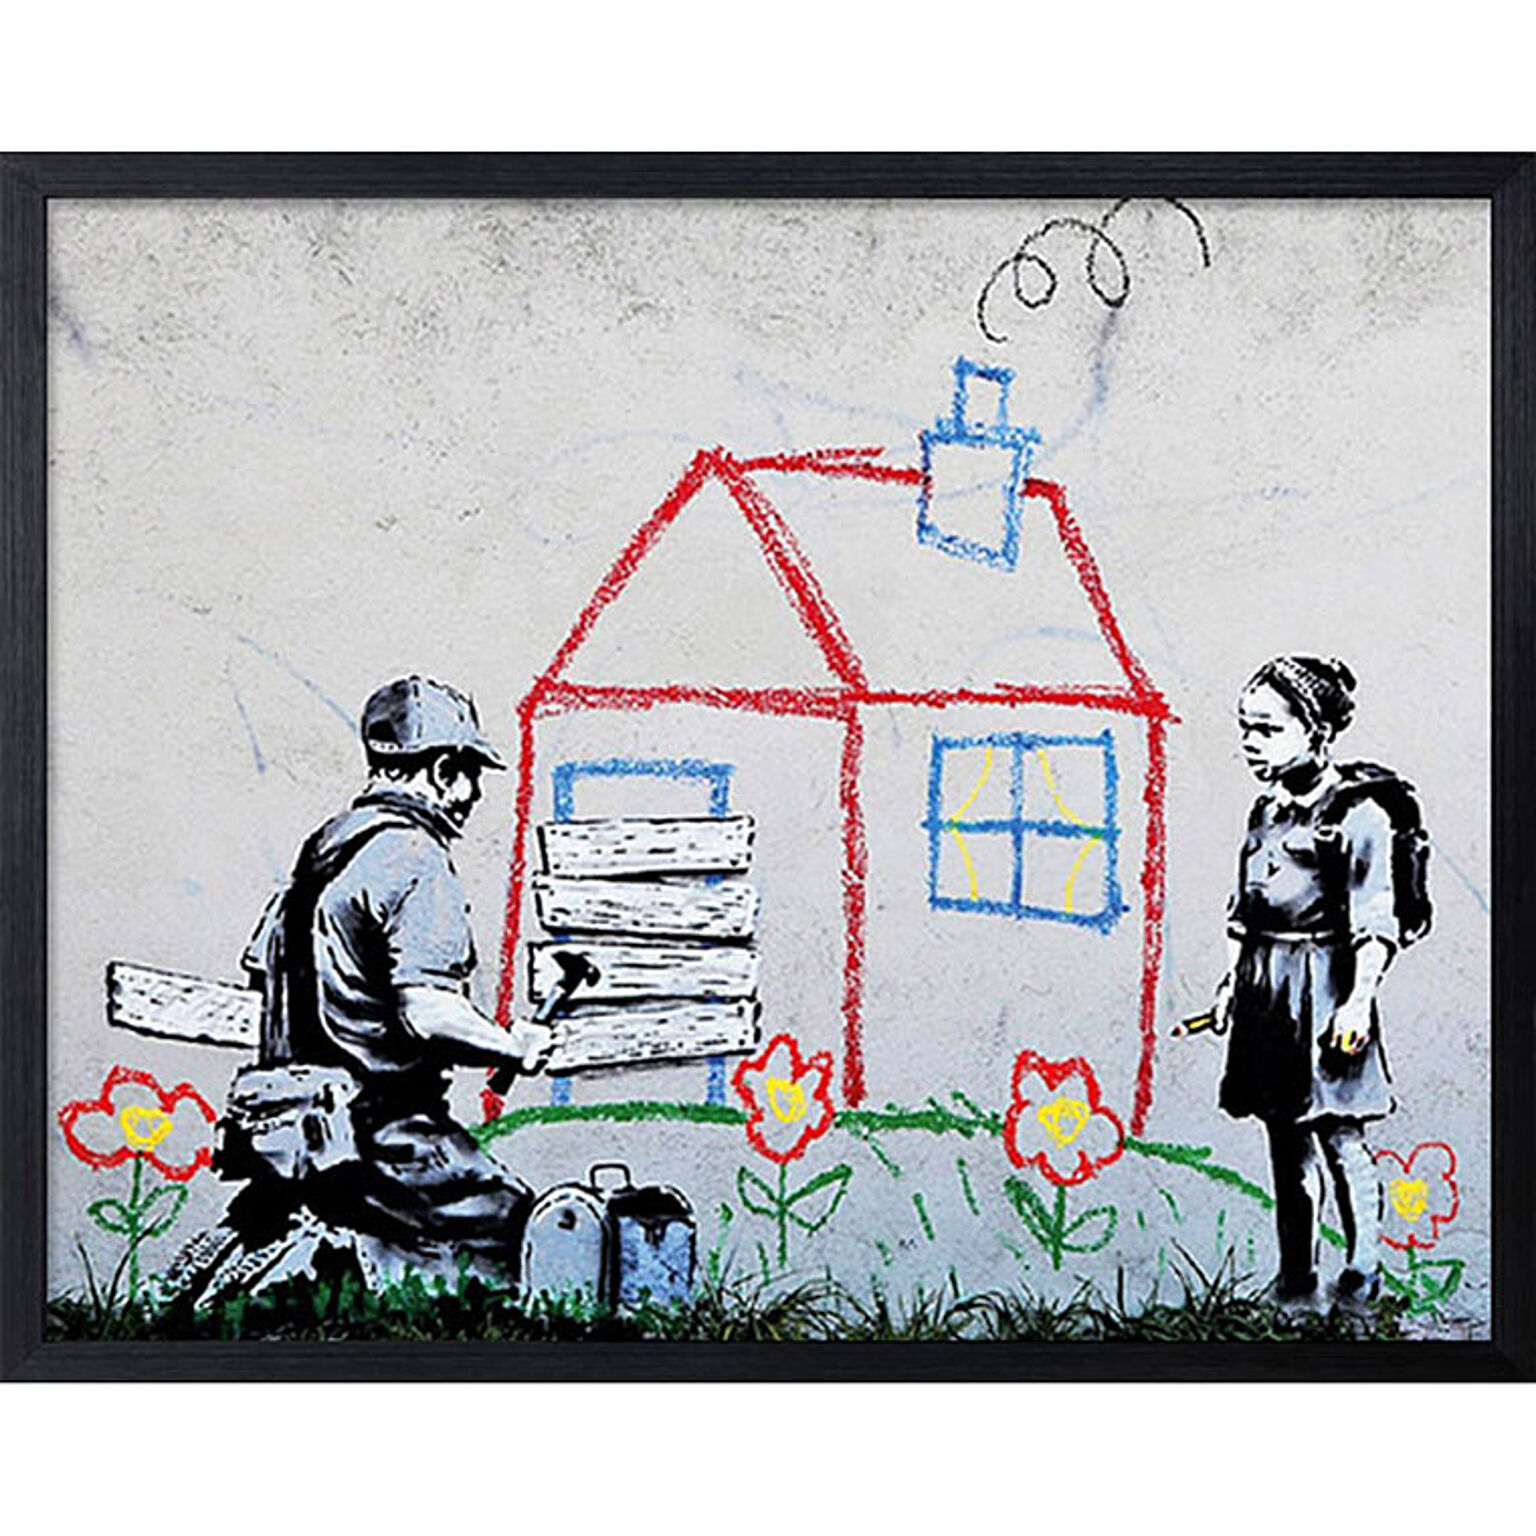 バンクシー Banksy ポスター アートパネル 絵画 インテリア アートポスター 壁掛け アートフレーム タペストリー プリントポスター デザイナー おしゃれ シンプル モダン IBA-61740